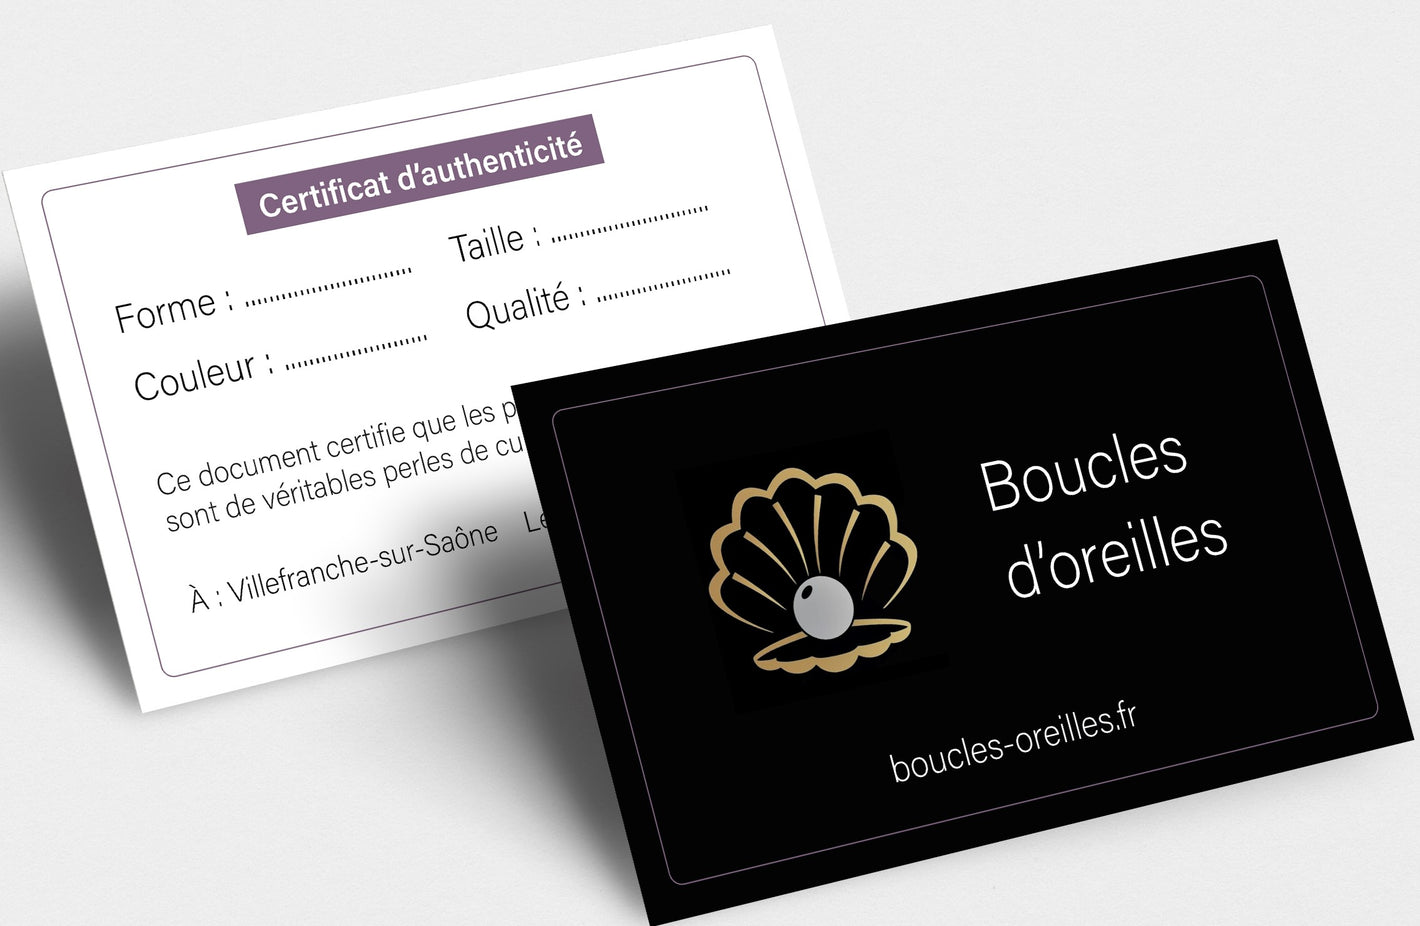 Vue recto verso des certificats d'authenticité délivrés par le site boucles-oreilles.fr